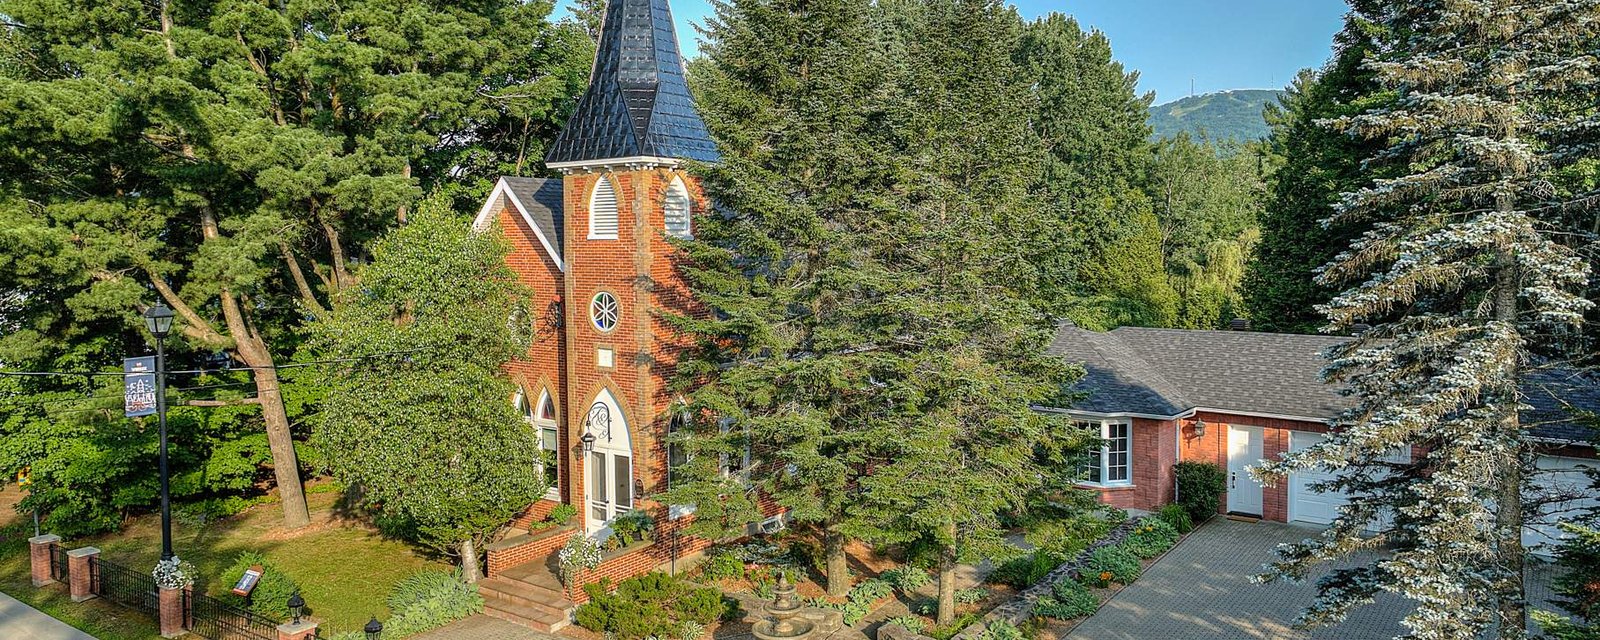 Impressionnante transformation d'une église centenaire située au cœur du village de Bromont